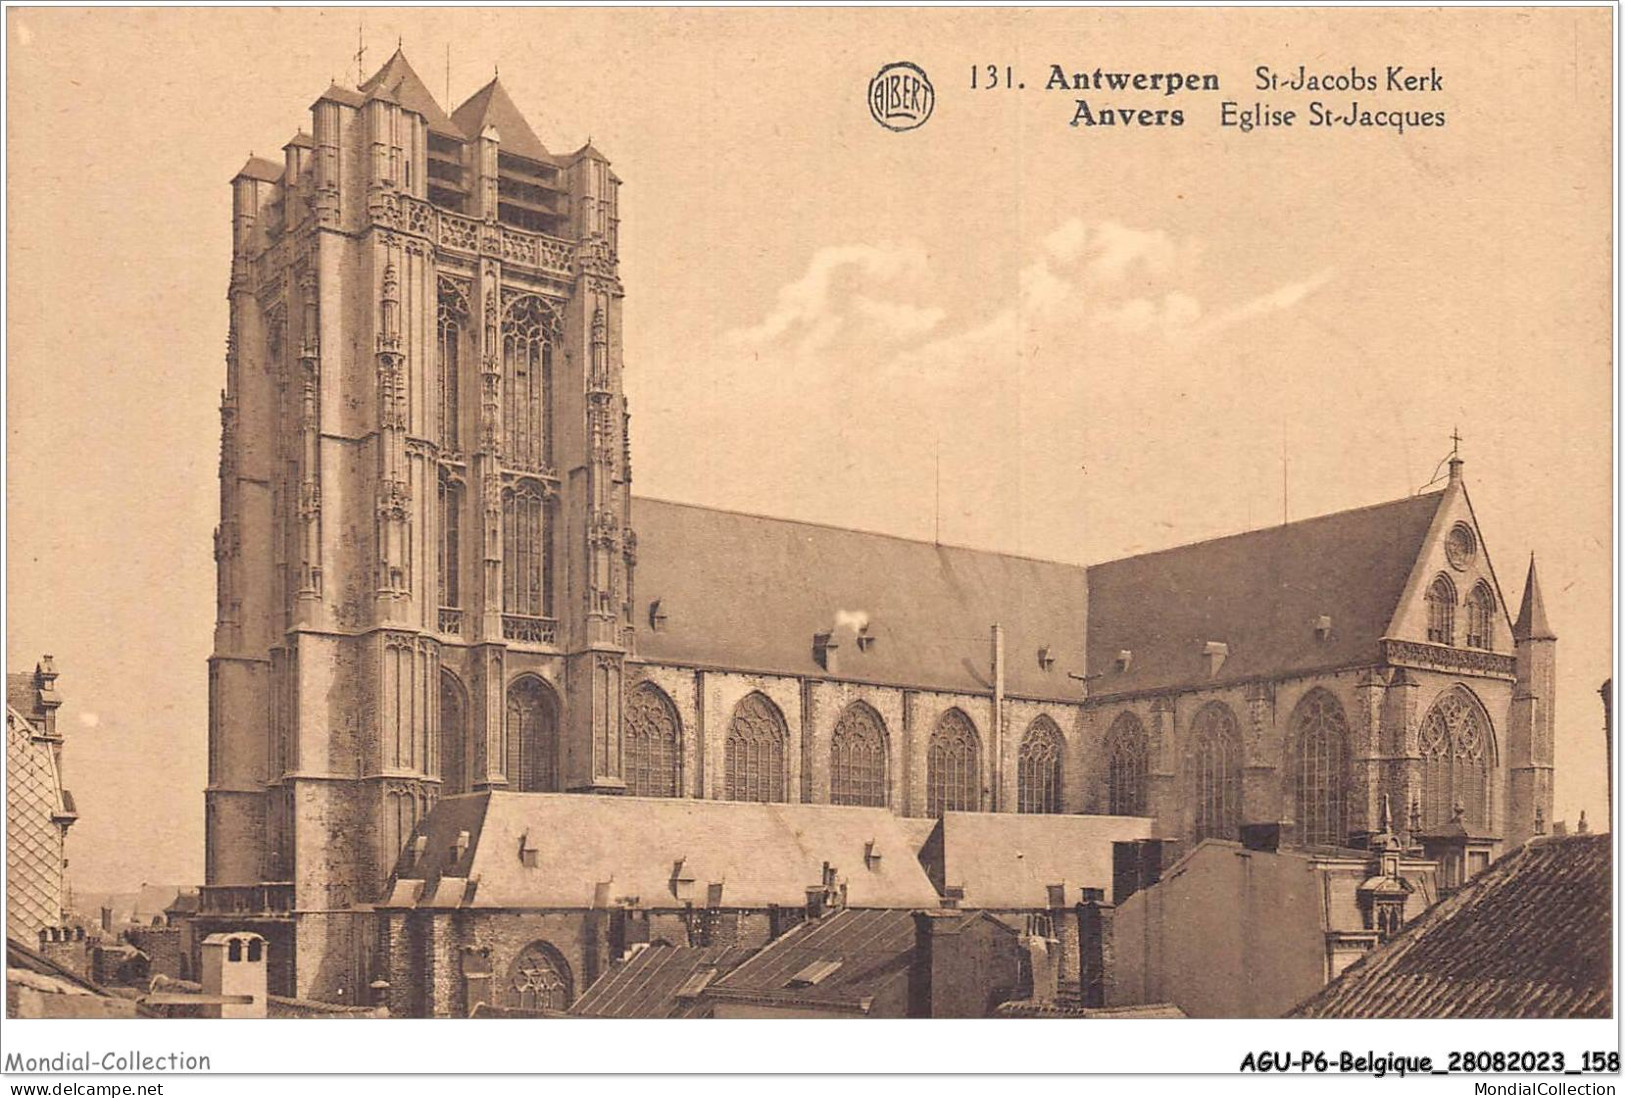 AGUP6-0525-BELGIQUE - ANVERS - église St-jacques - Antwerpen